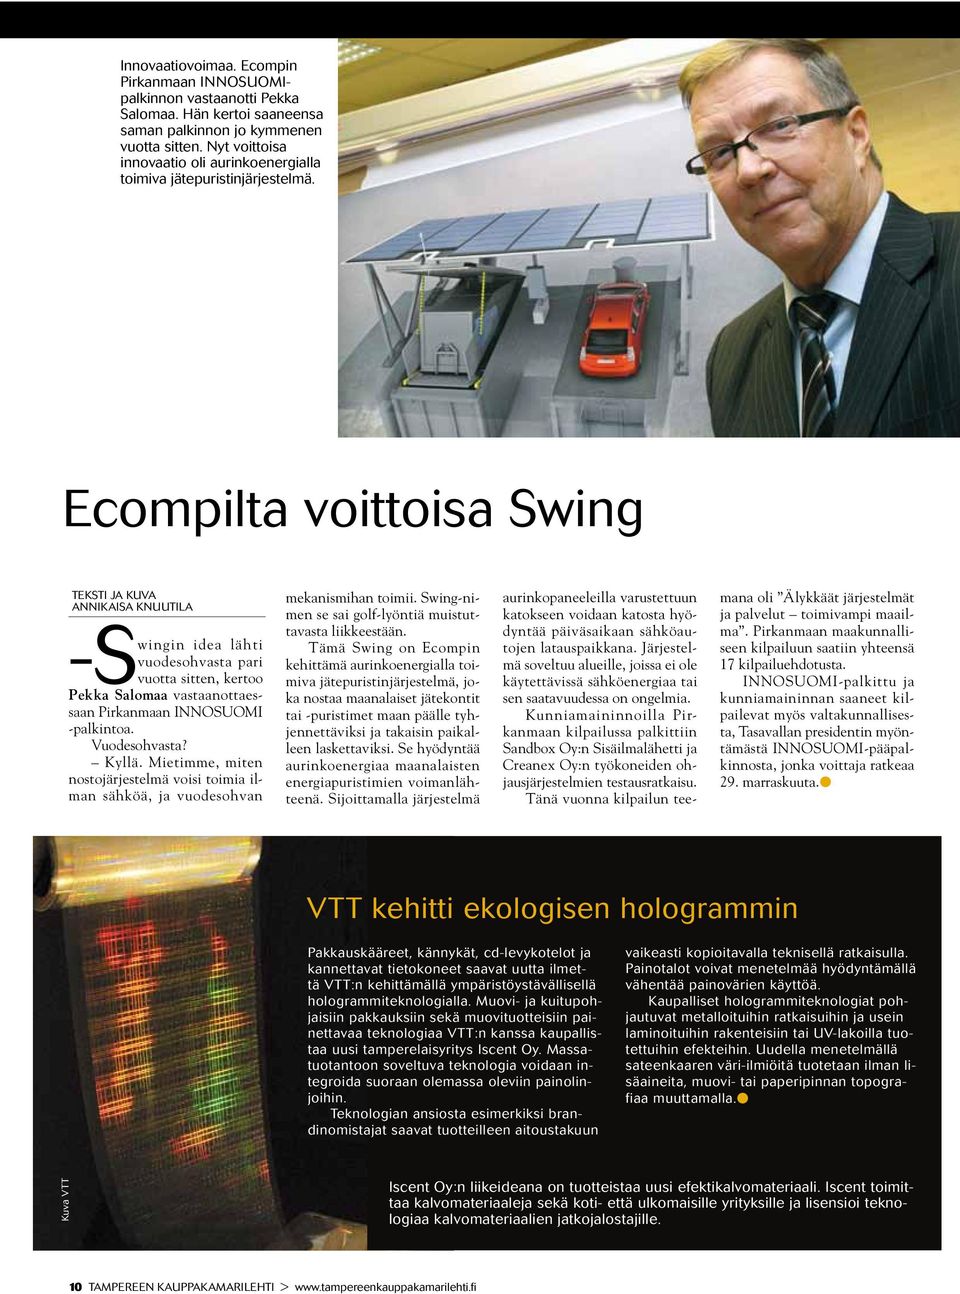 Ecompilta voittoisa Swing teksti ja kuva annikaisa knuutila -S wingin idea lähti vuodesohvasta pari vuotta sitten, kertoo Pekka Salomaa vastaanottaessaan Pirkanmaan INNO SUOMI -palkintoa.